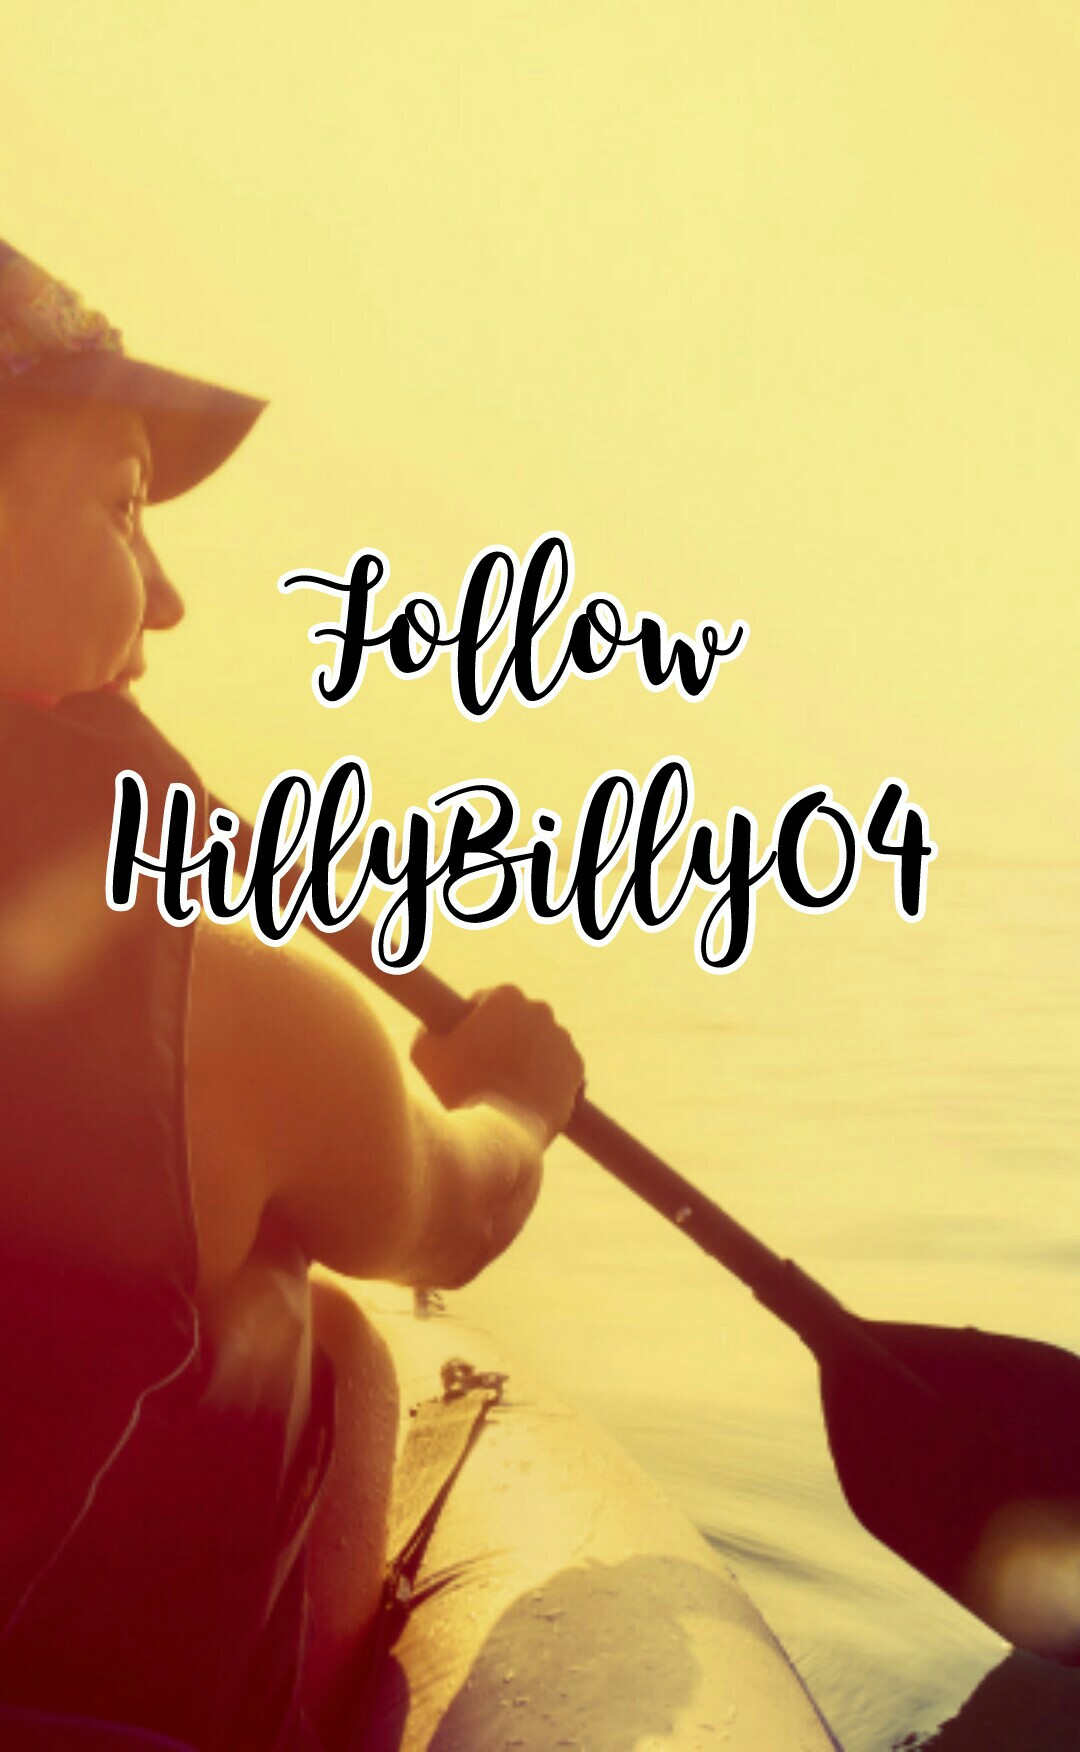 Follow 
HillyBilly04 